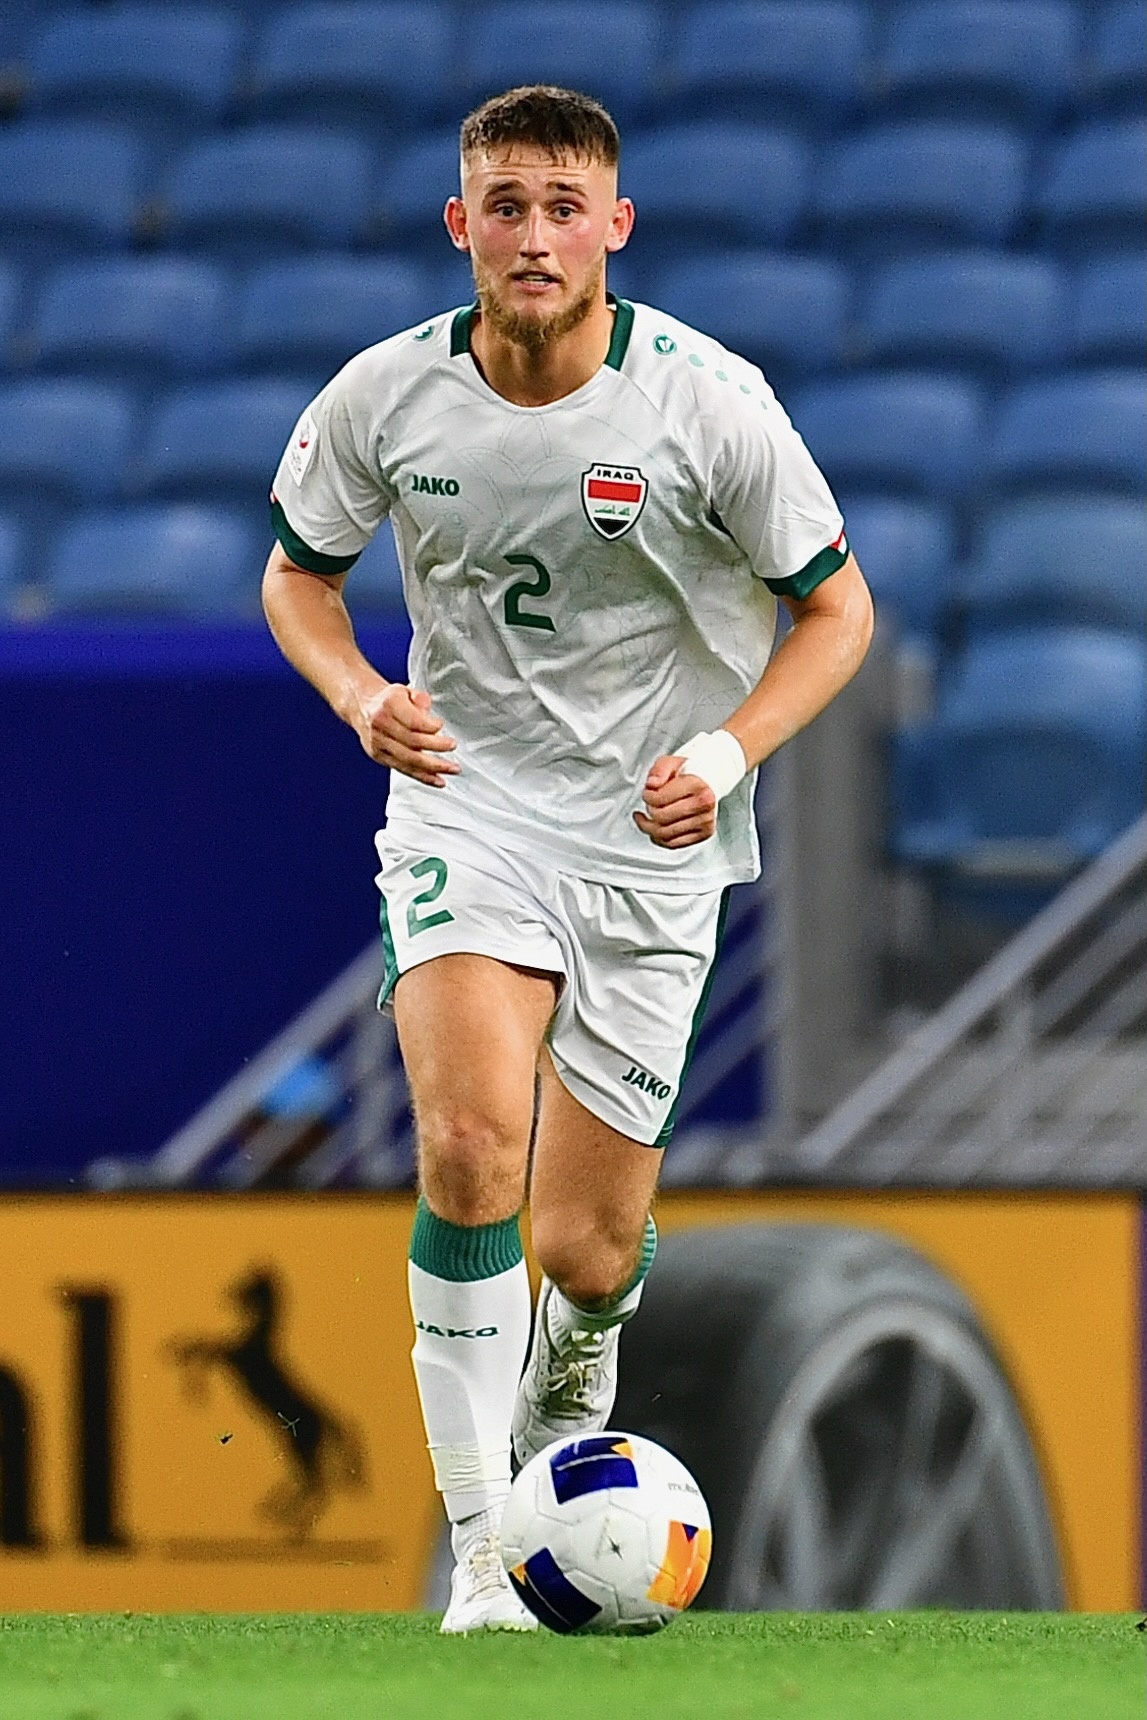 Dàn cầu thủ thi đấu ở châu Âu của U23 Iraq - ảnh 5